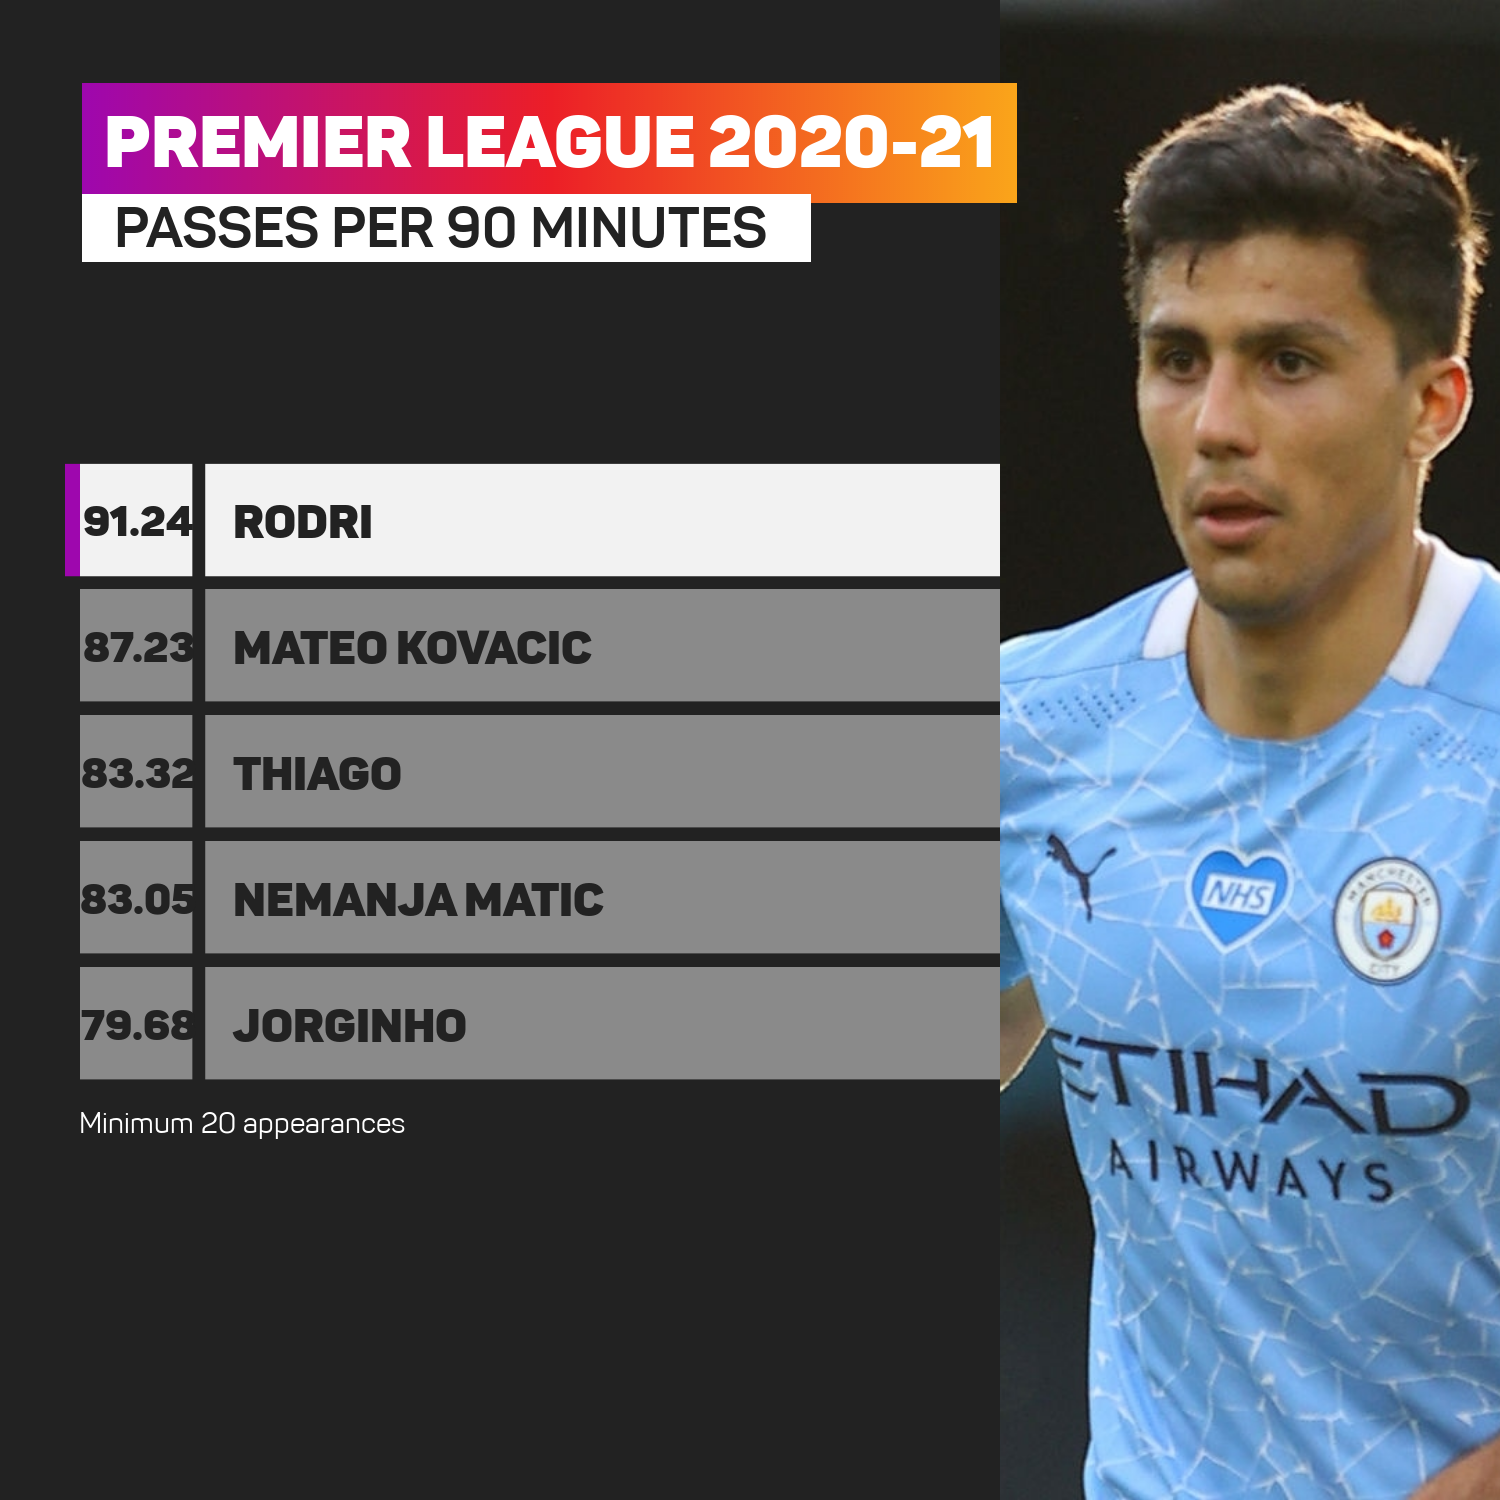 Premier League most passes per 90 minutes